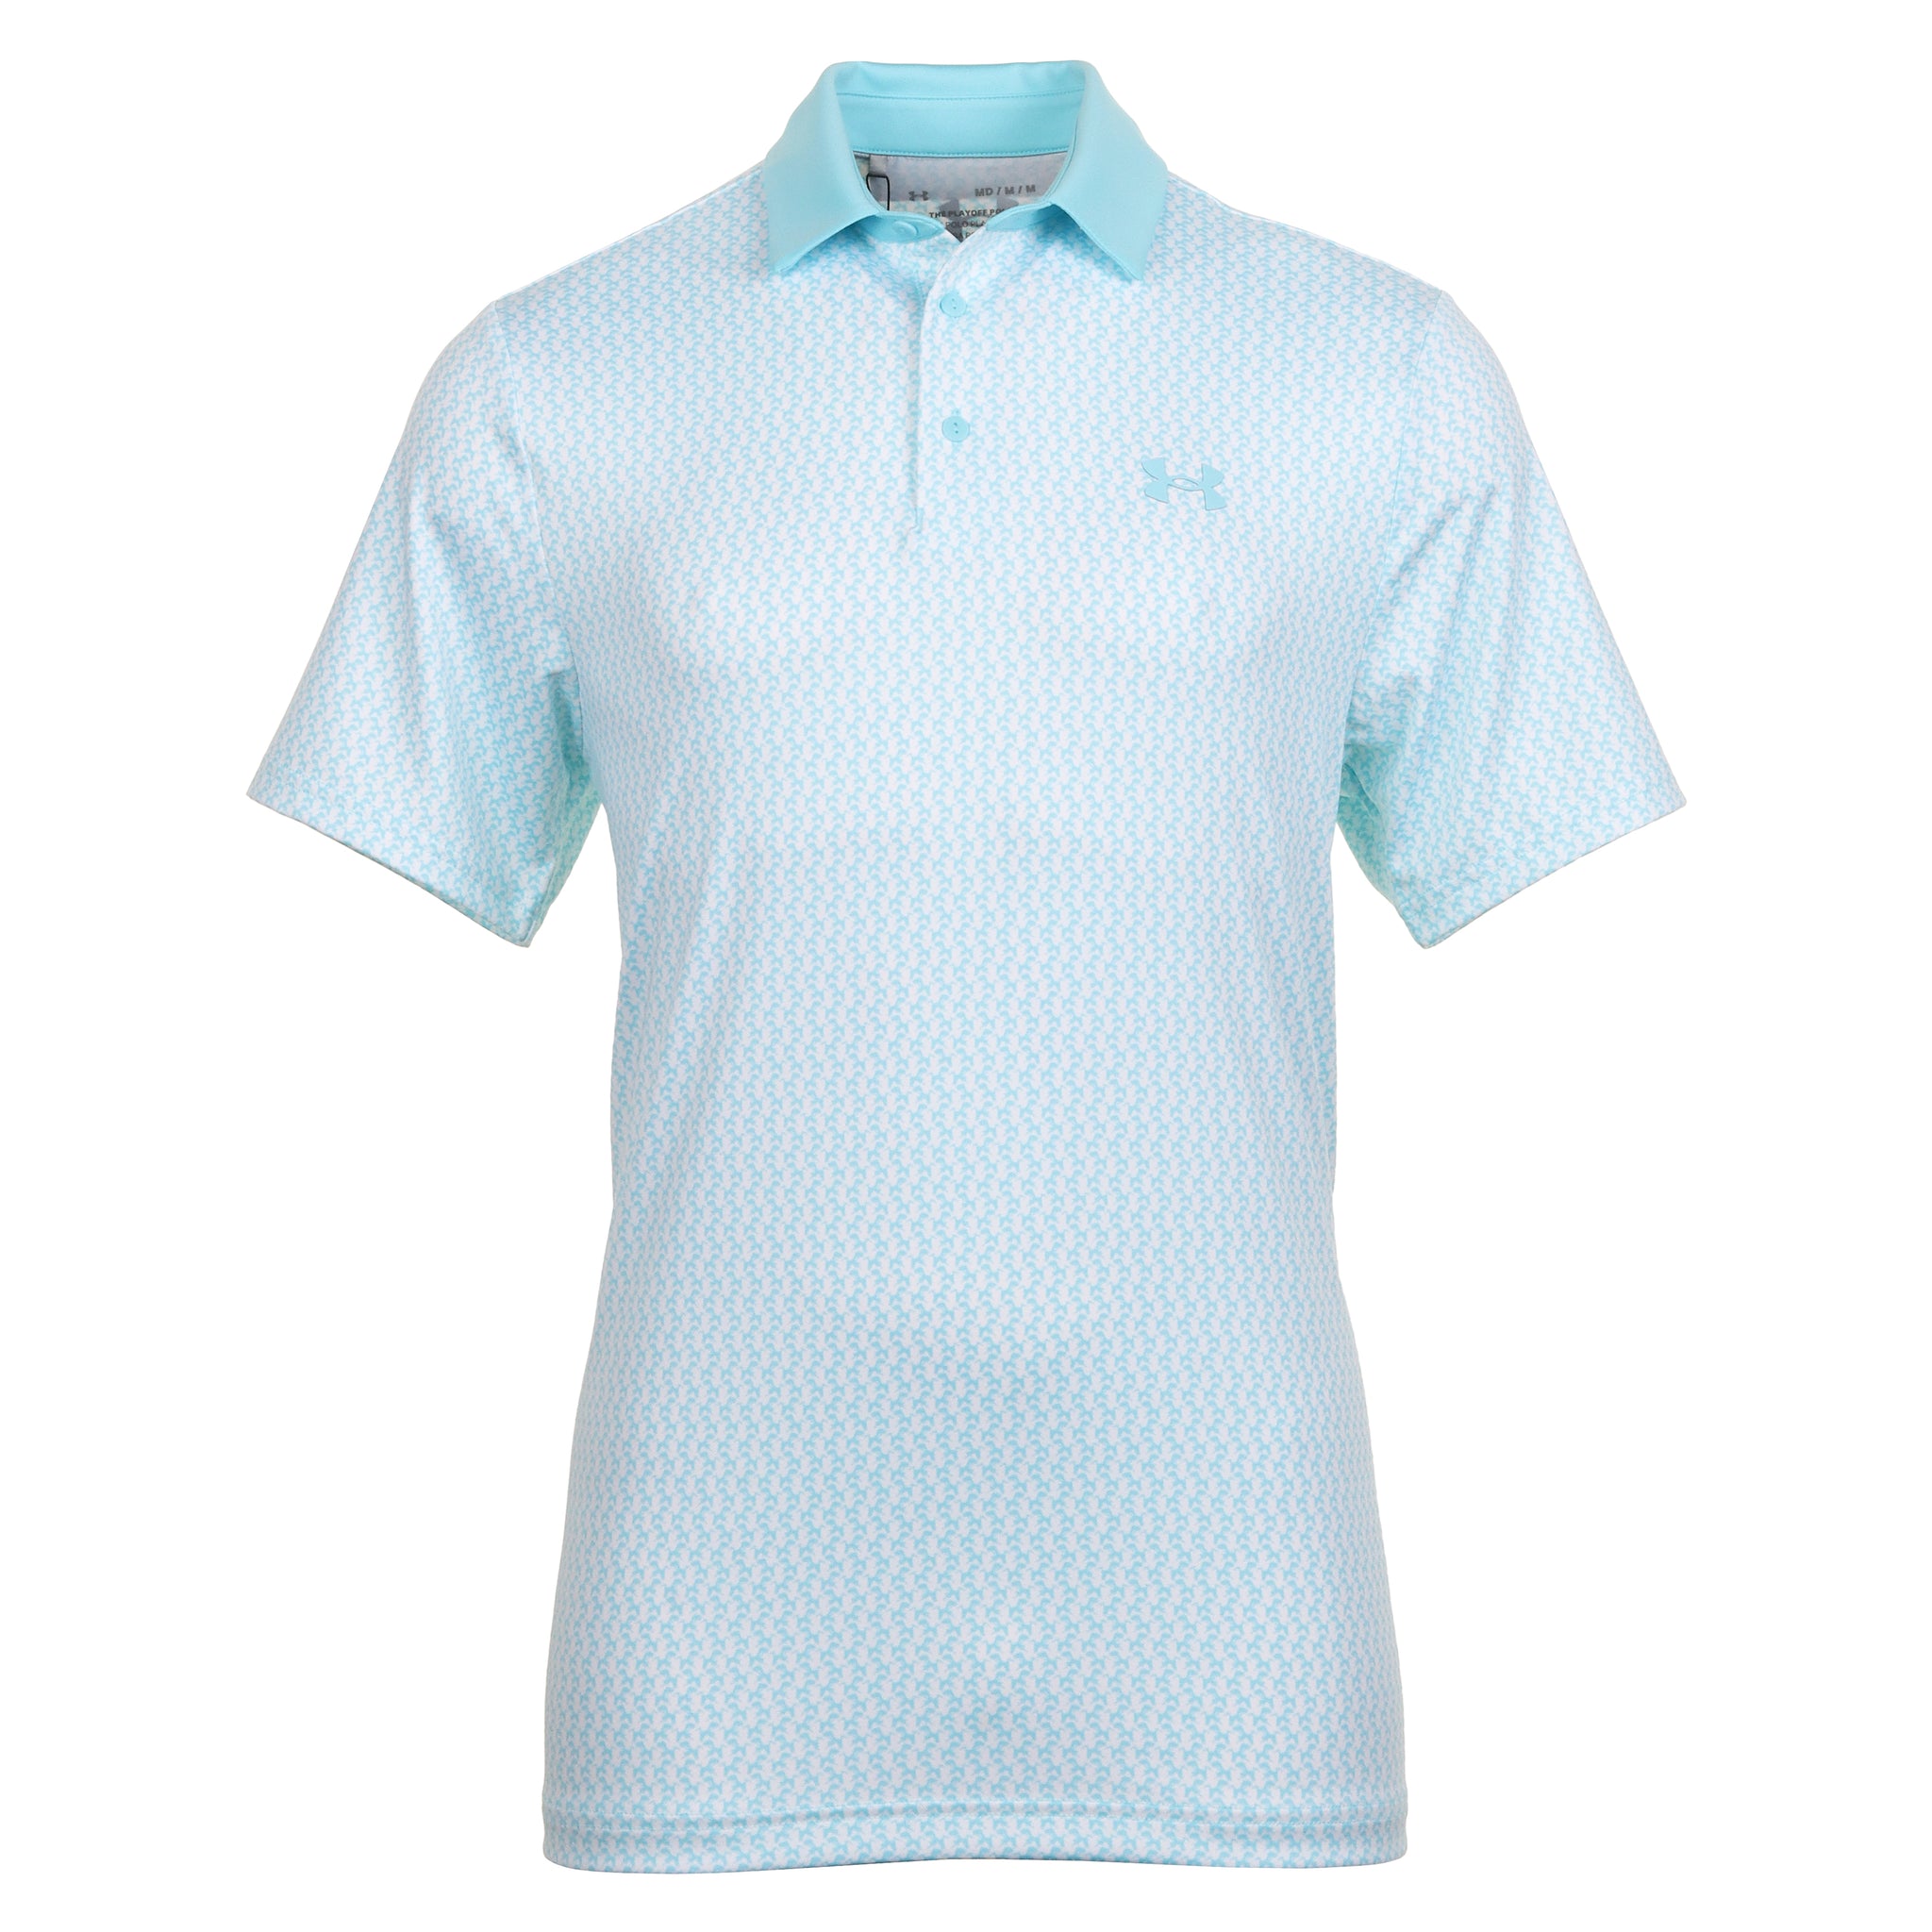 Under Armour Golf Playoff 3.0 Shirt 1378677 Sky Blue White 914